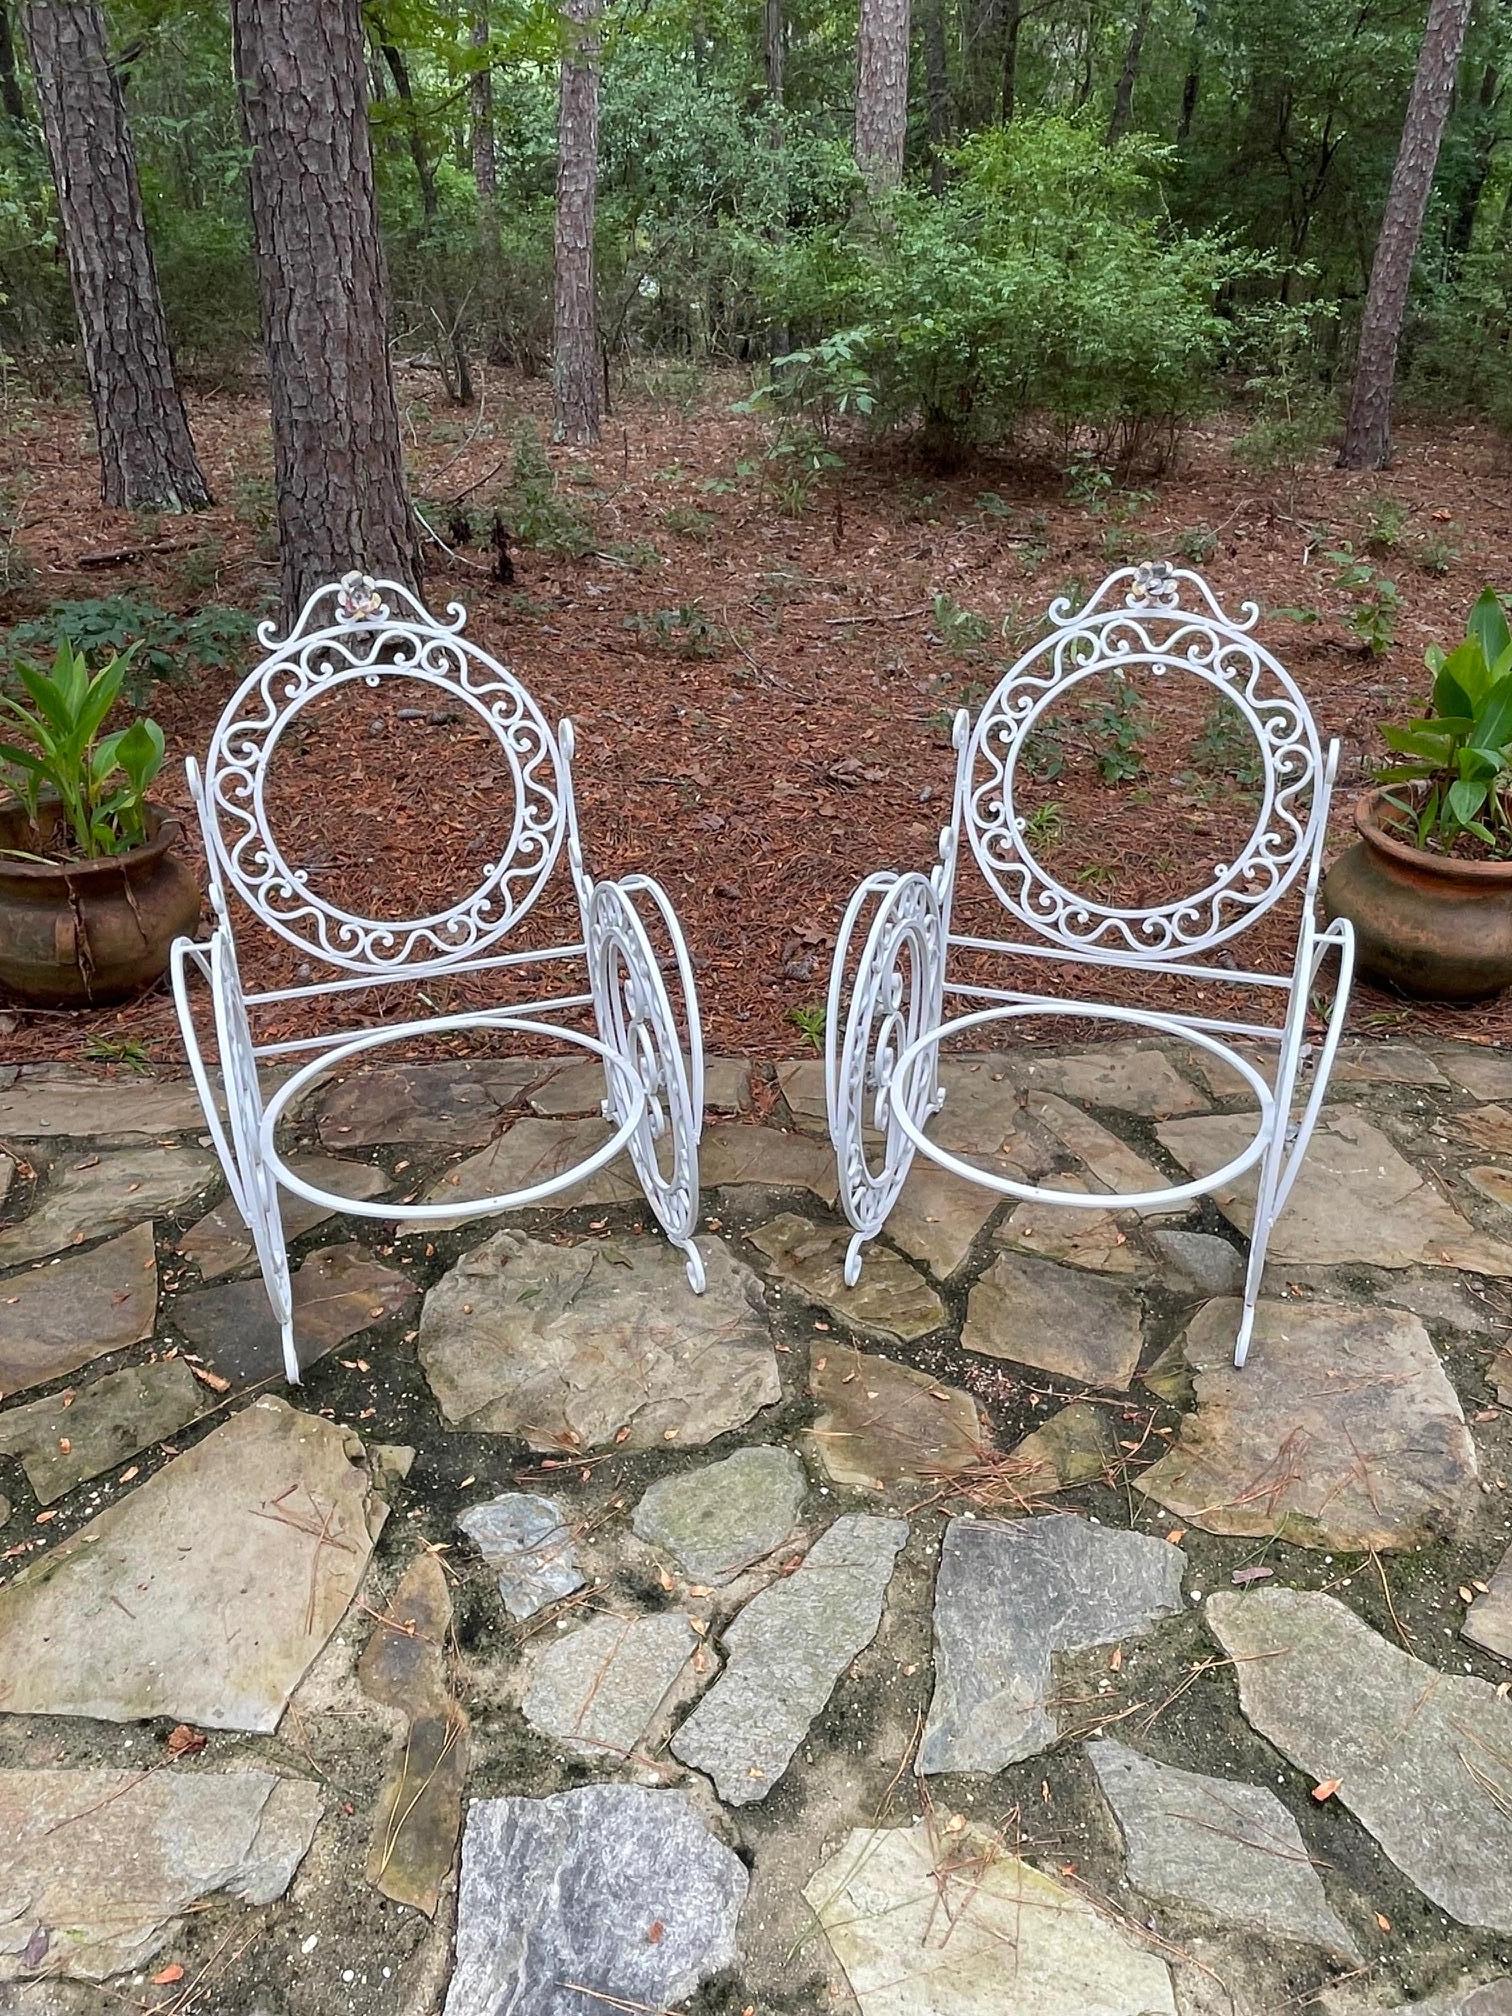 Exceptionnelle paire de chaises de patio/orangerie françaises de la fin du 19e siècle.

Il s'agit d'une magnifique paire de grandes chaises en fer forgé, avec des détails décoratifs et une exécution des plus complexes. Des fleurs et des feuilles